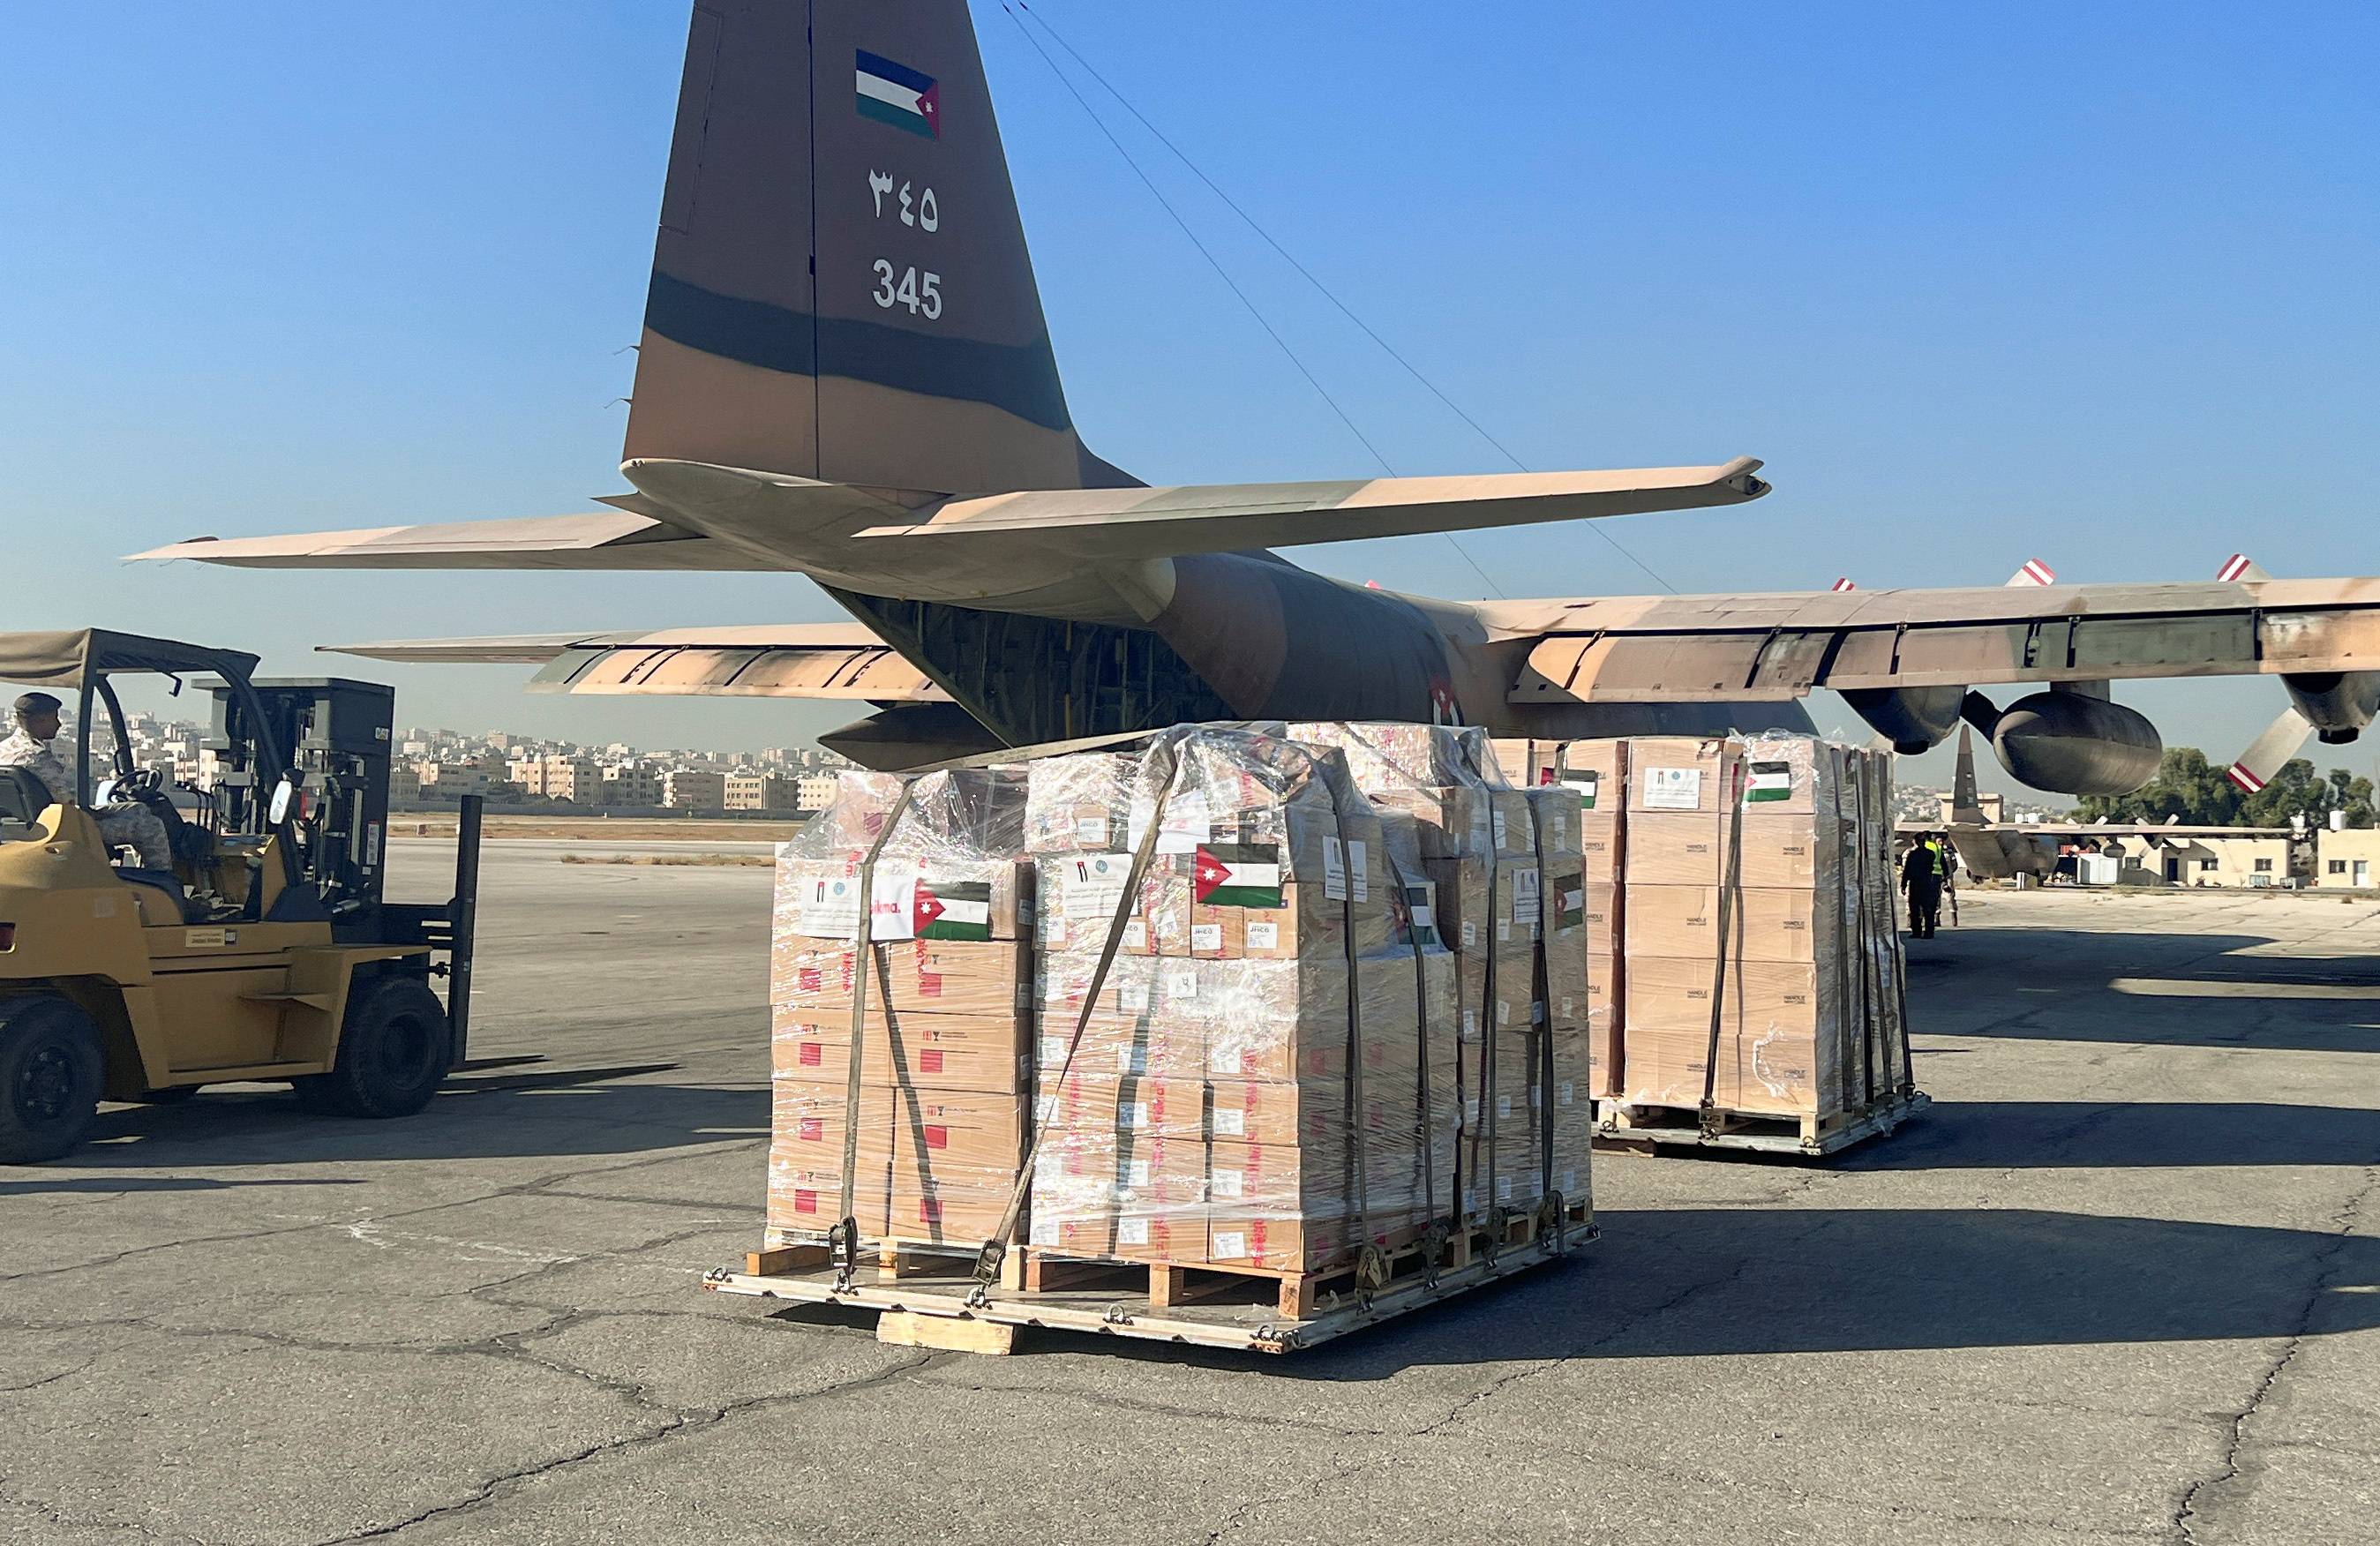 الأردن يرسل طائرة مساعدات اغاثية جديدة بالتعاون مع اليونيسيف الى أهلنا في غزة